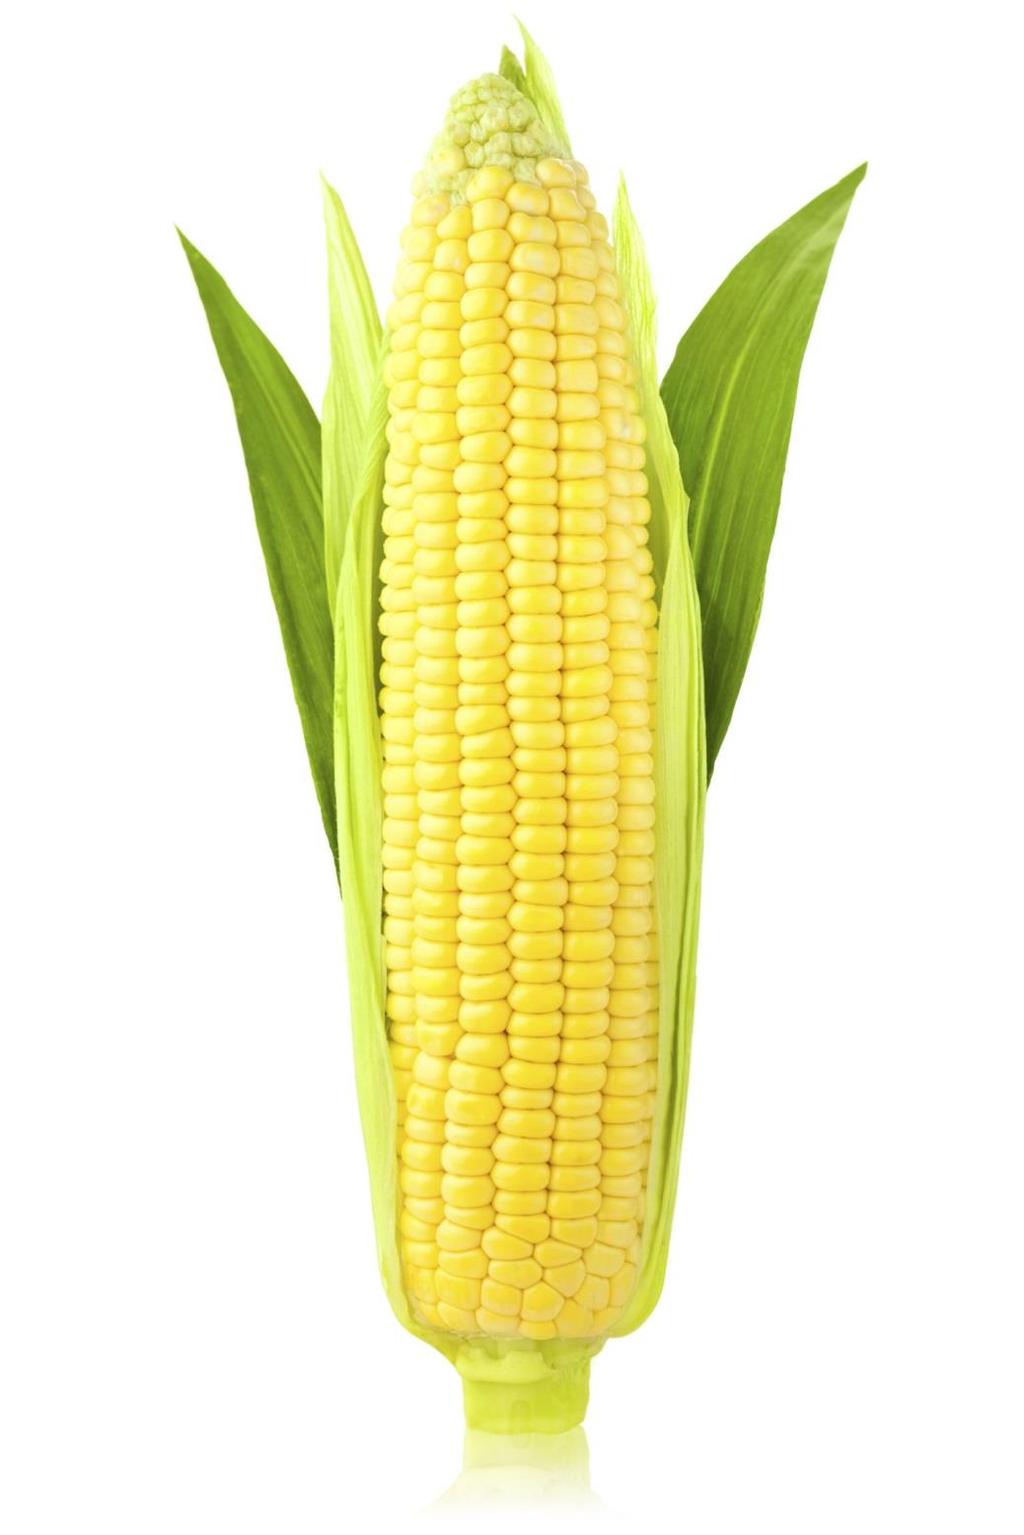 Corn Grains Galore Lesson Plans *